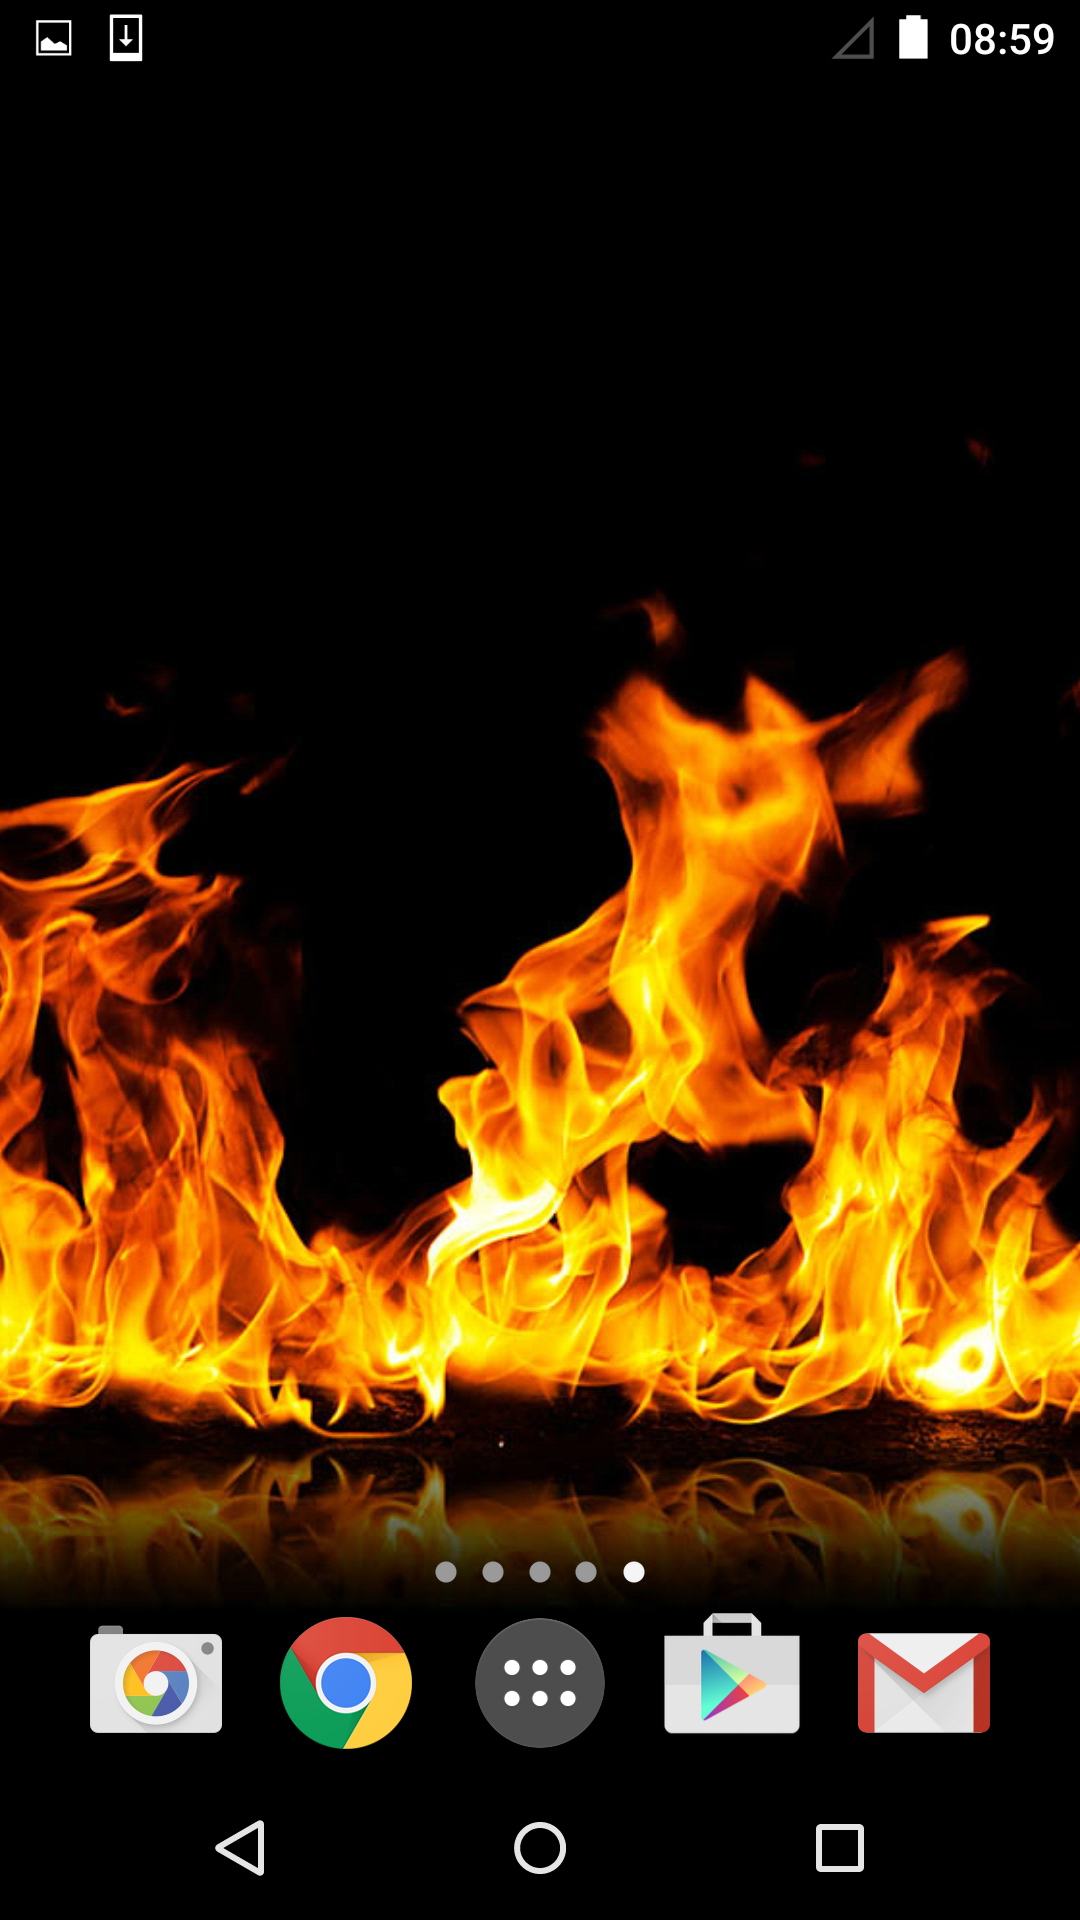 화재 라이브 배경 화면,불꽃,불,열,폰트,모닥불